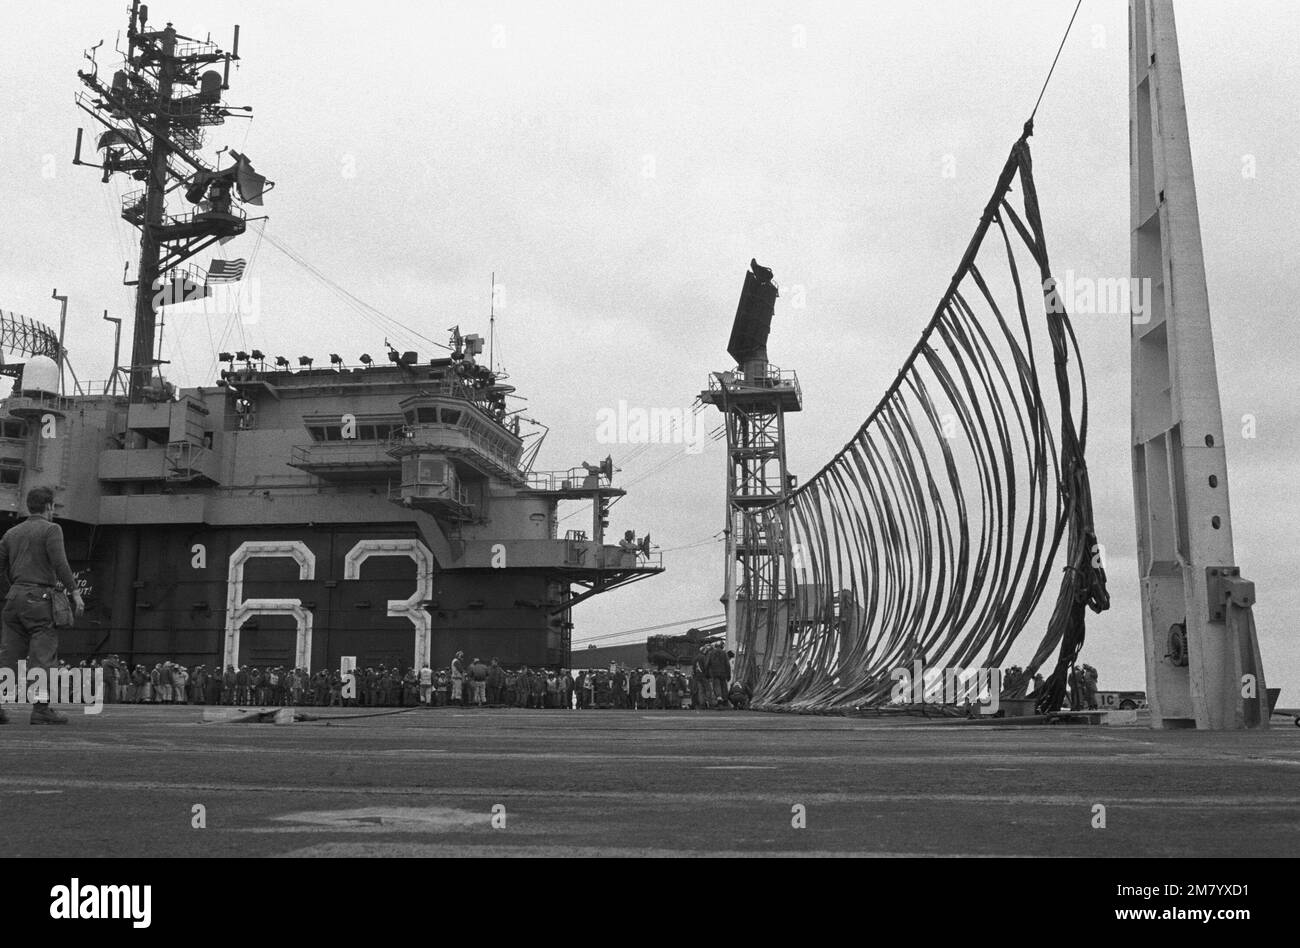 DN-SN-86-00069. Base: USS Kitty Hawk (CV 63) Stock Photo